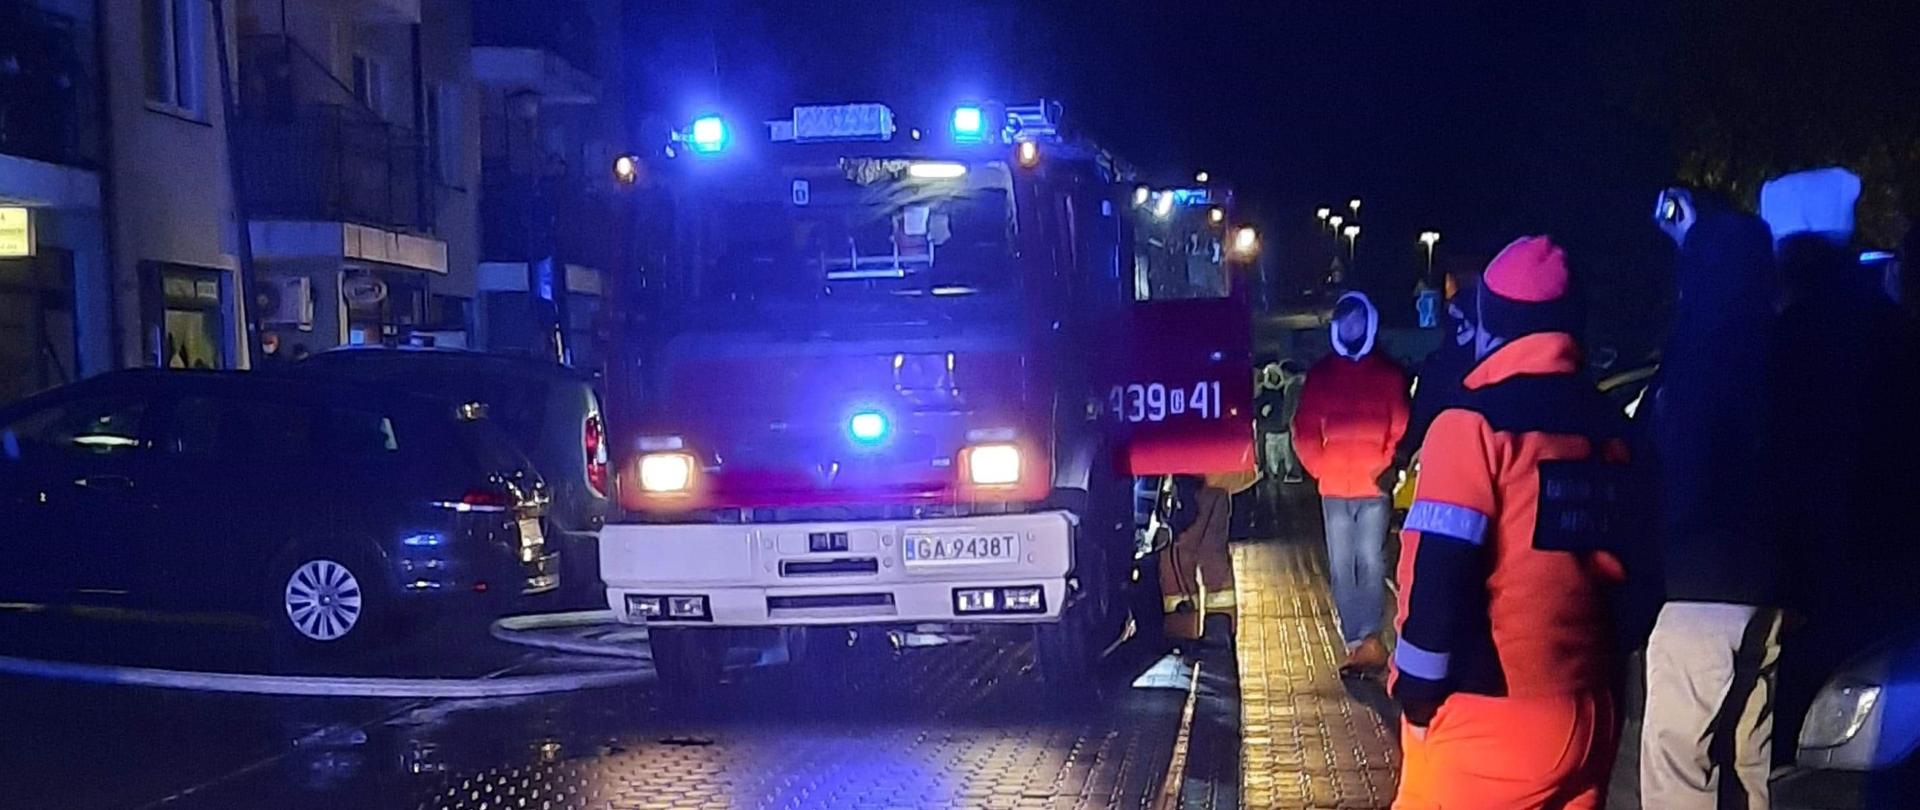 Jest ciemno. Wieczór. Czerwony wóz strażacki z włączonymi, niebieskimi światłami błyskowymi, stoi na drodze wyłożonej kostką brukową.